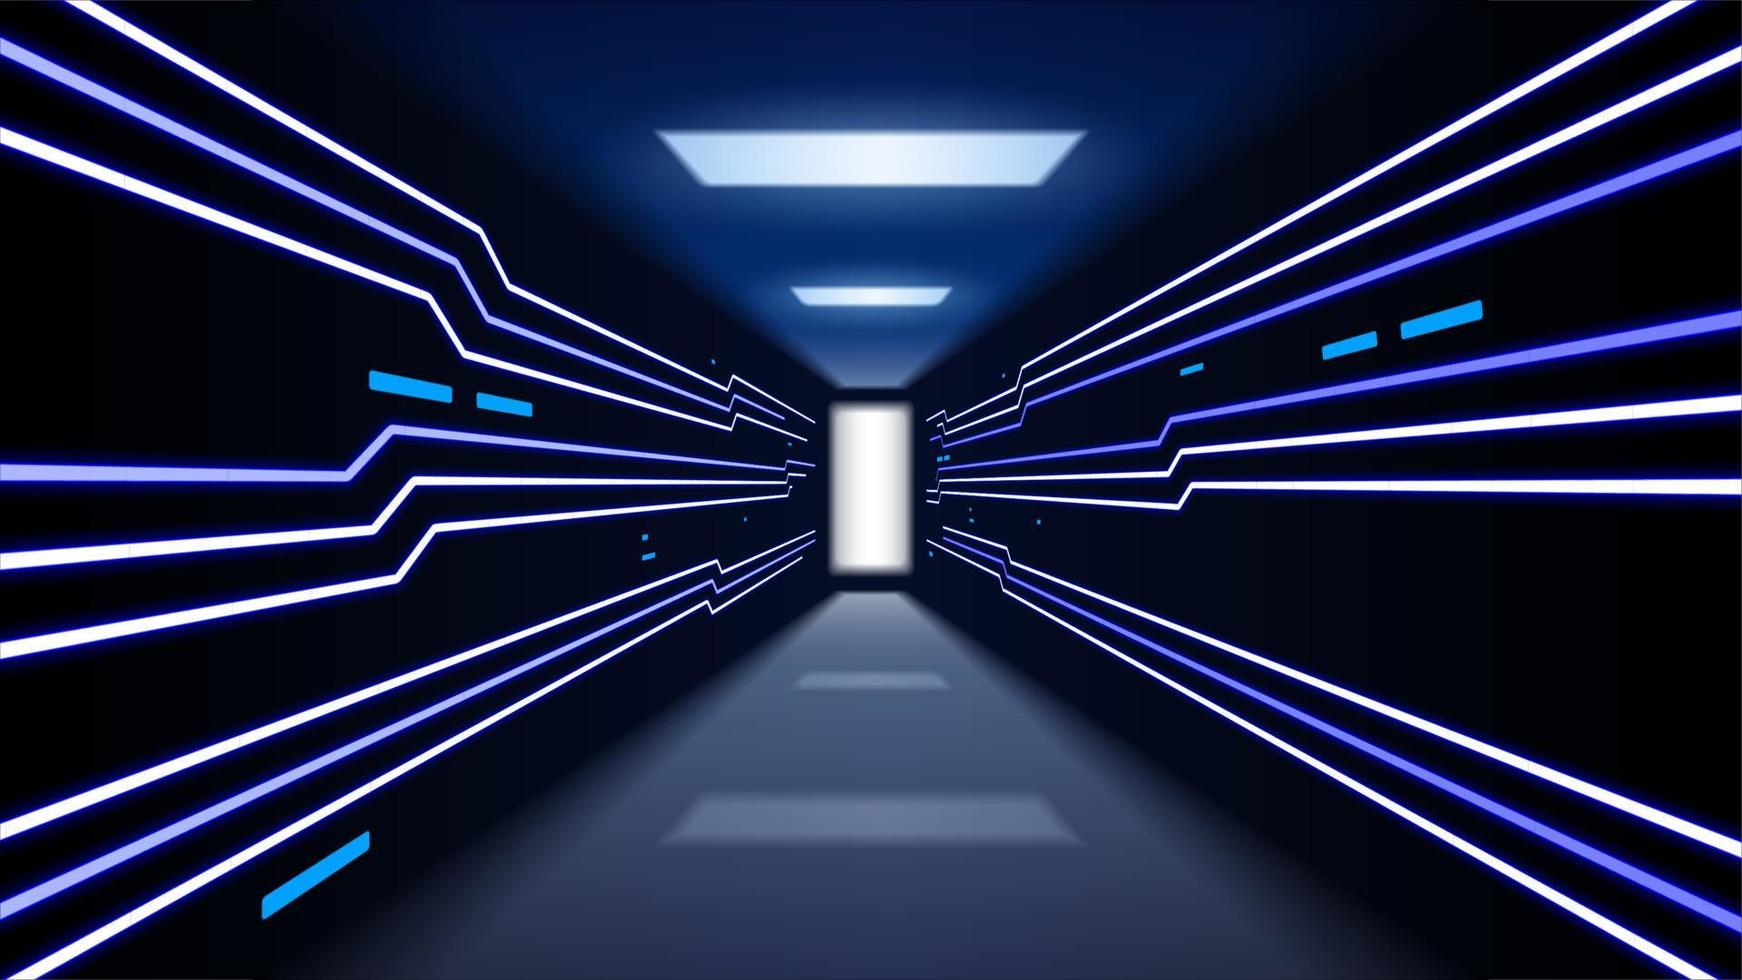 projection de visualisation au néon bleu de la transmission de données via le couloir internet haut débit. illustration vectorielle grand écran vecteur